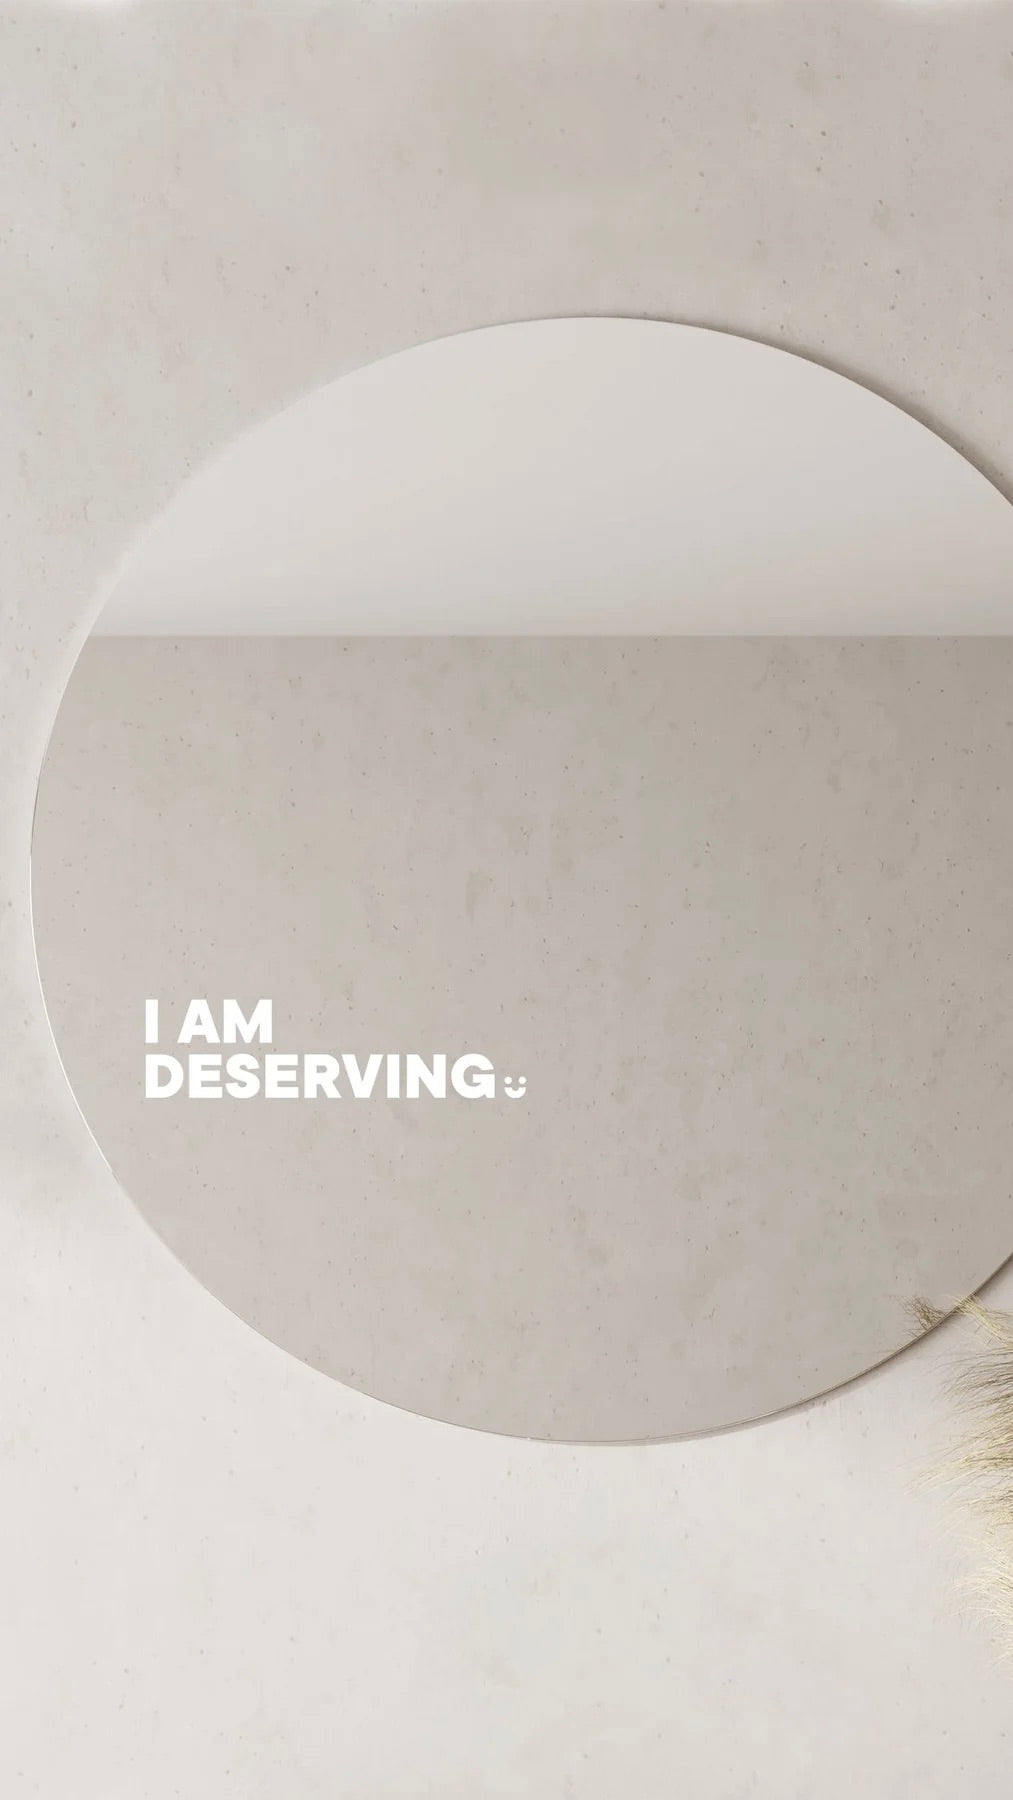 I Am Deserving - Affirmation Mirror Sticker